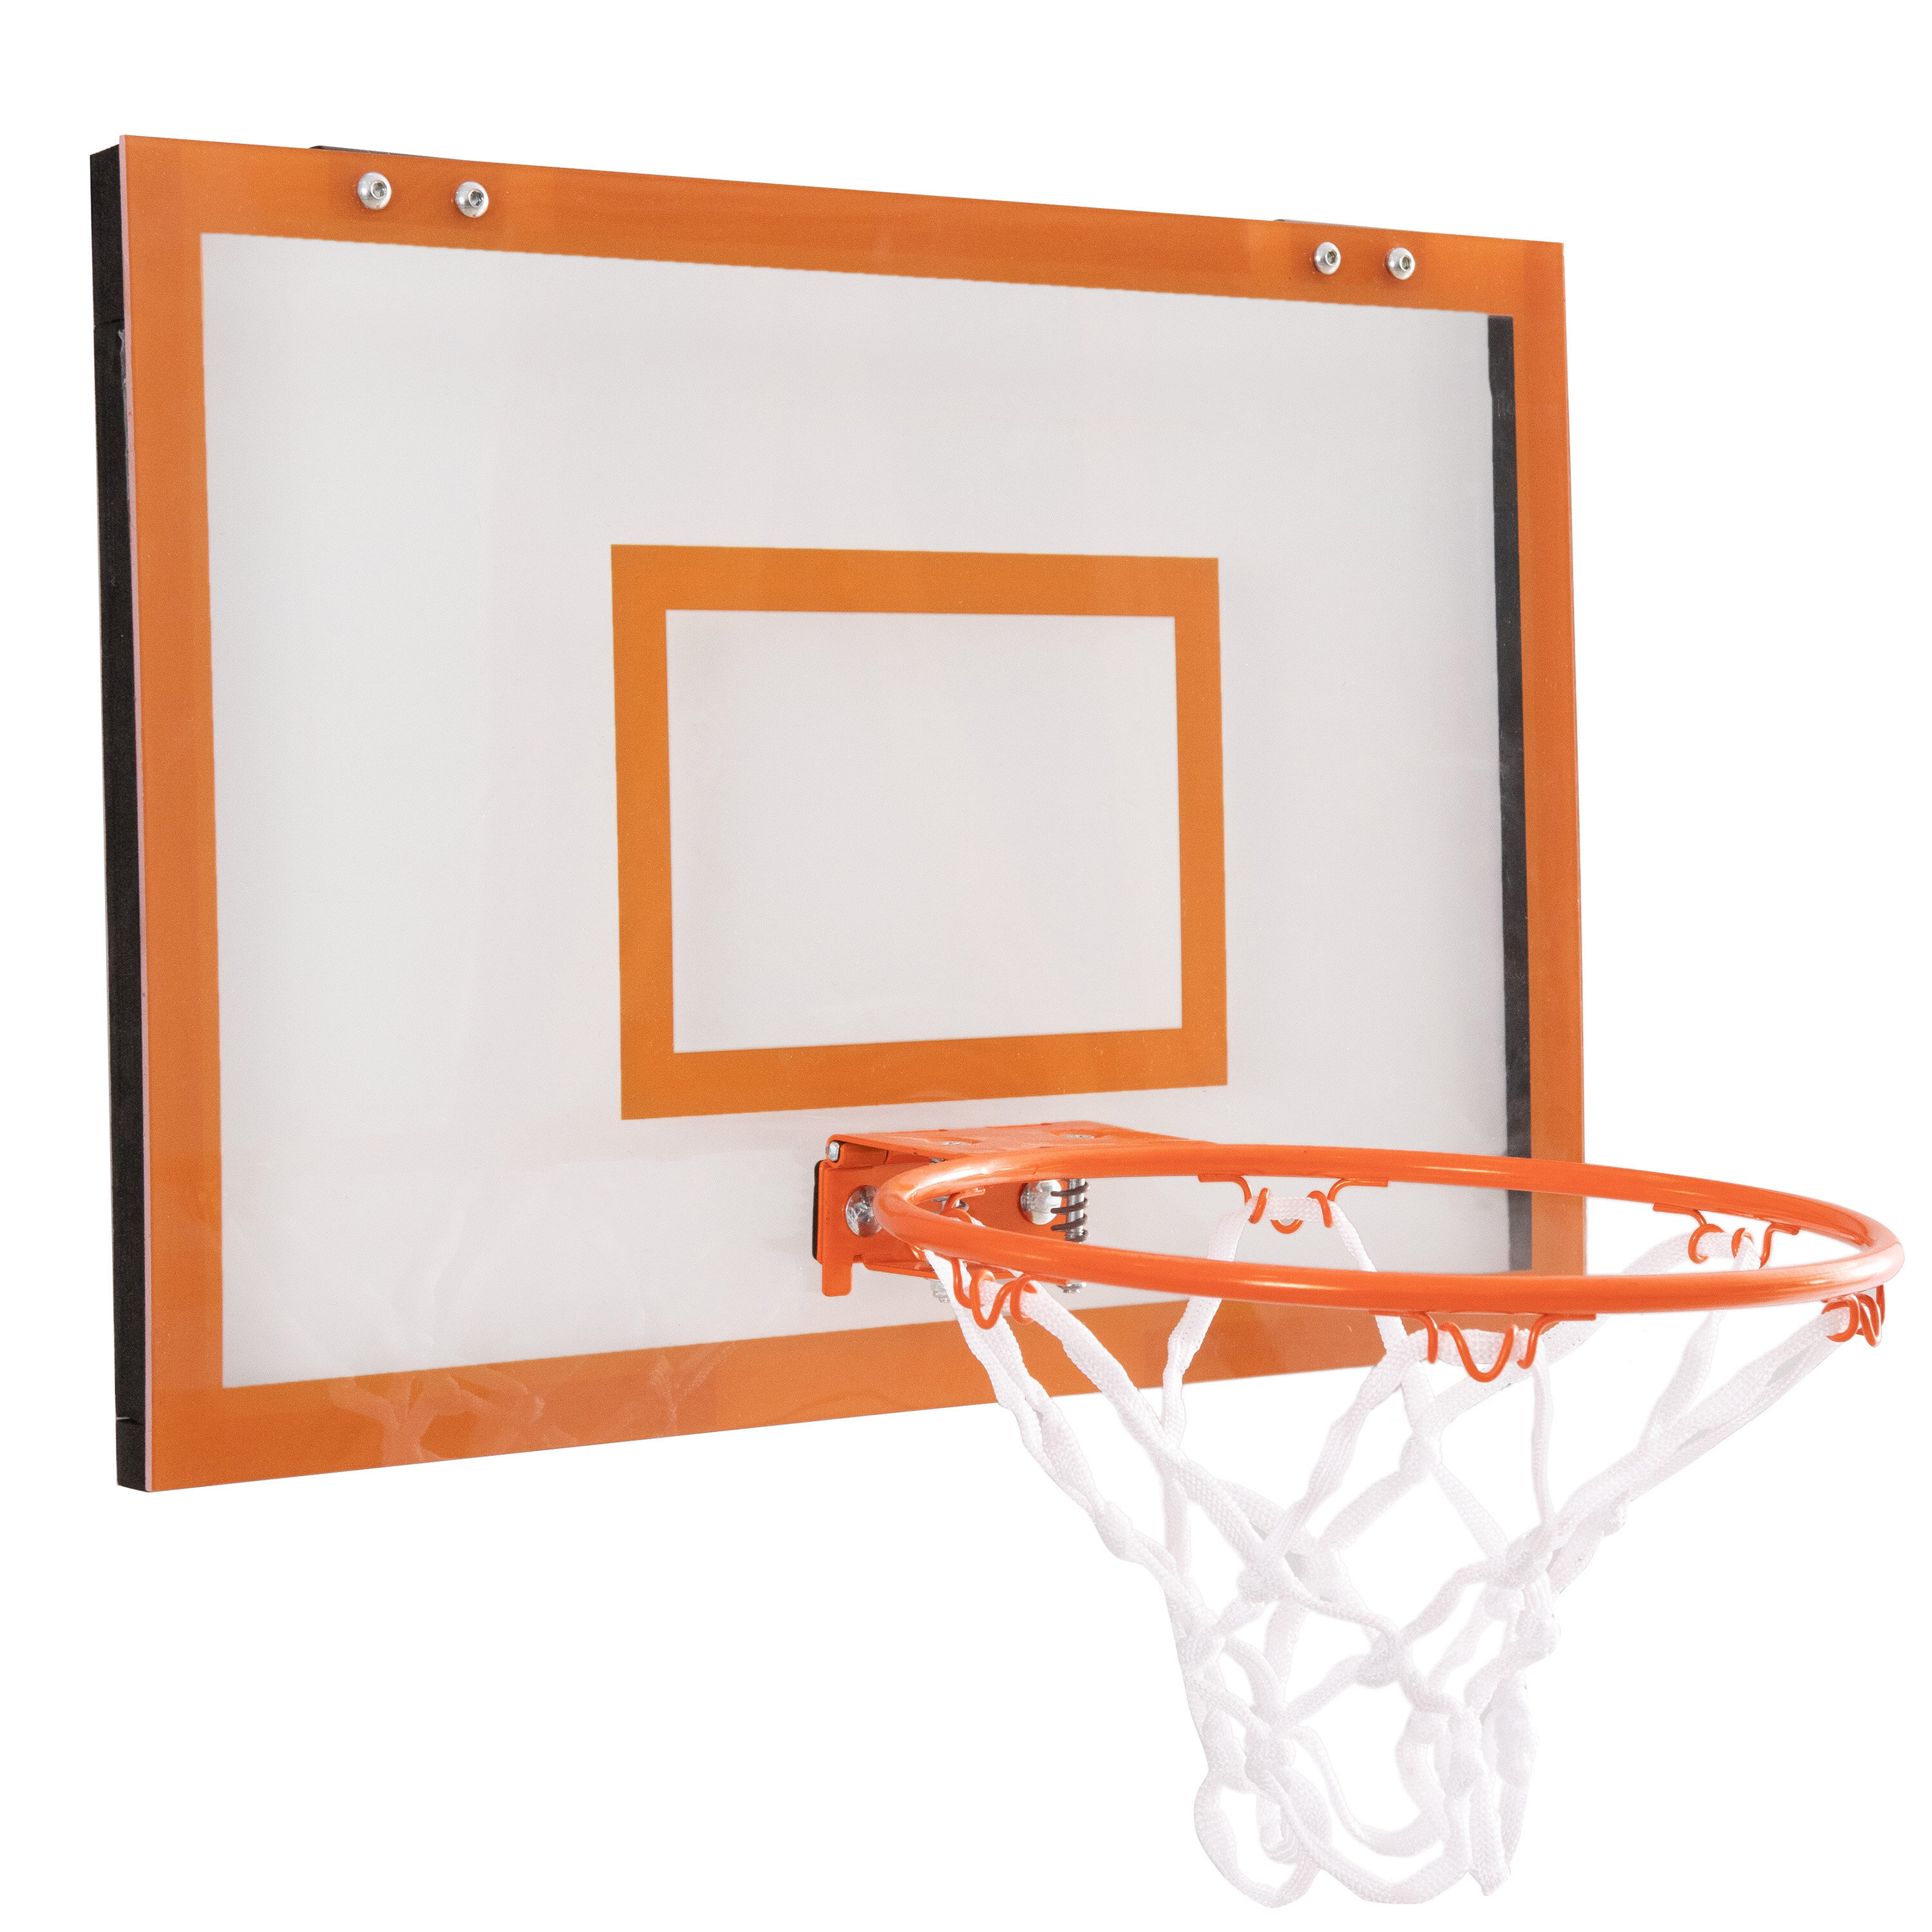 Mini Basketballs Hoop Toy Set Over The Door Plastic Backboard Indoor Kids Game 